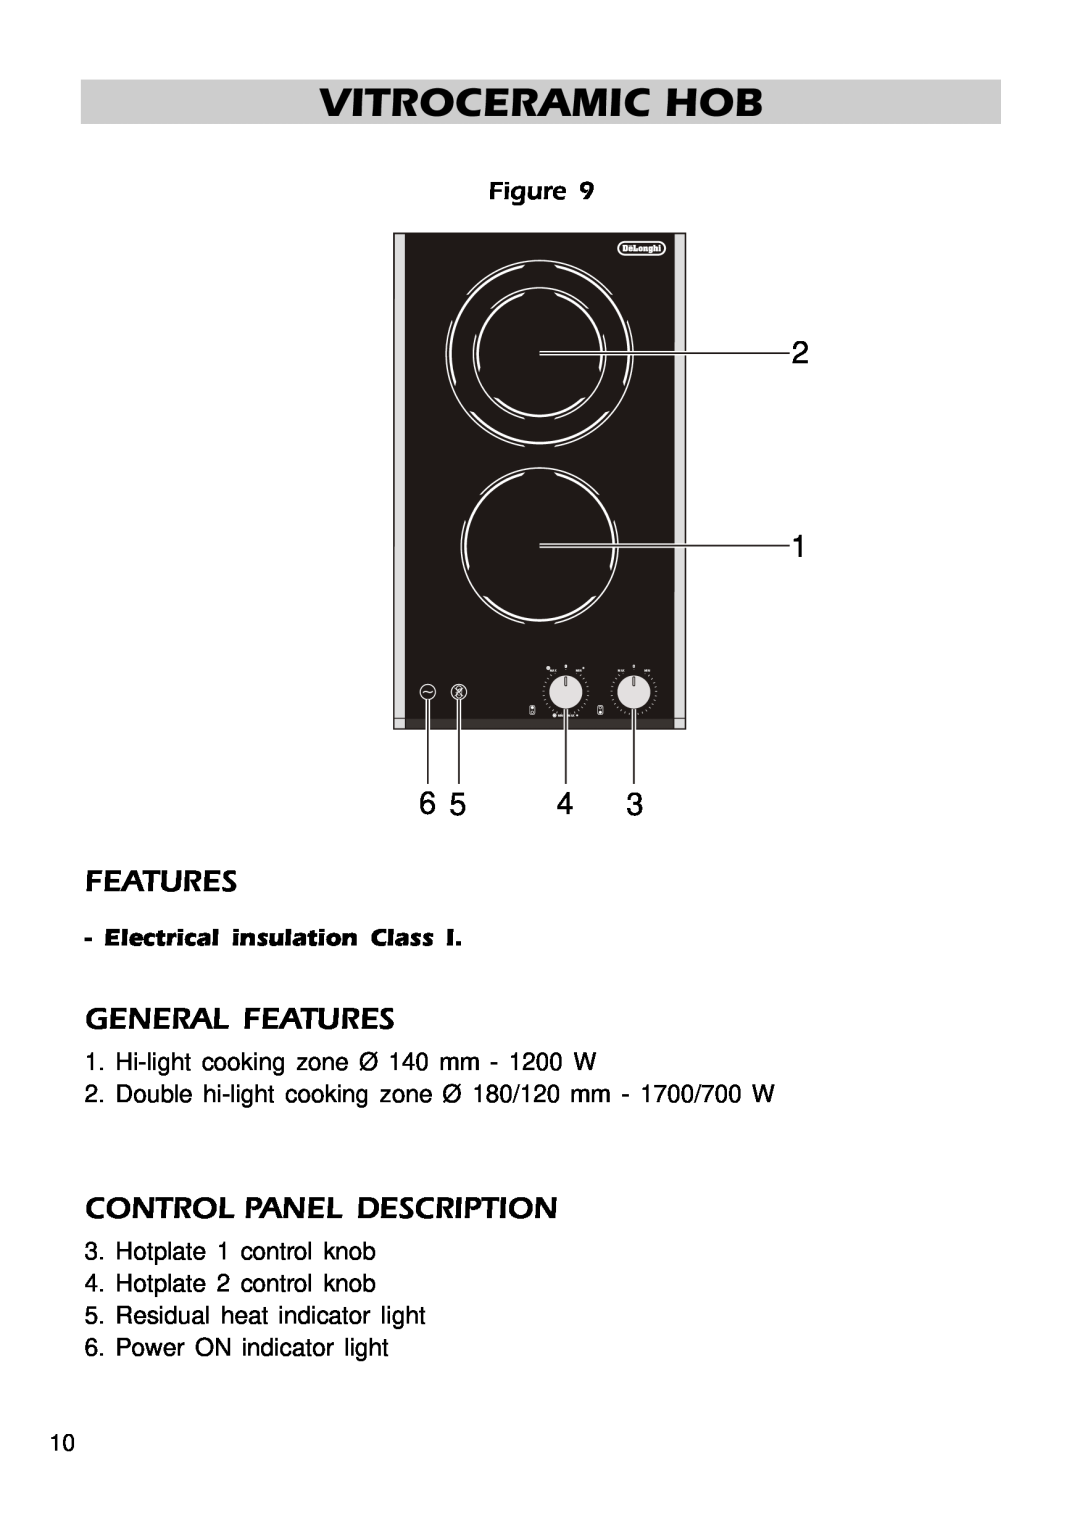 DeLonghi DE302HB manual General Features, Control Panel Description, Vitroceramic Hob, Electrical insulation Class 